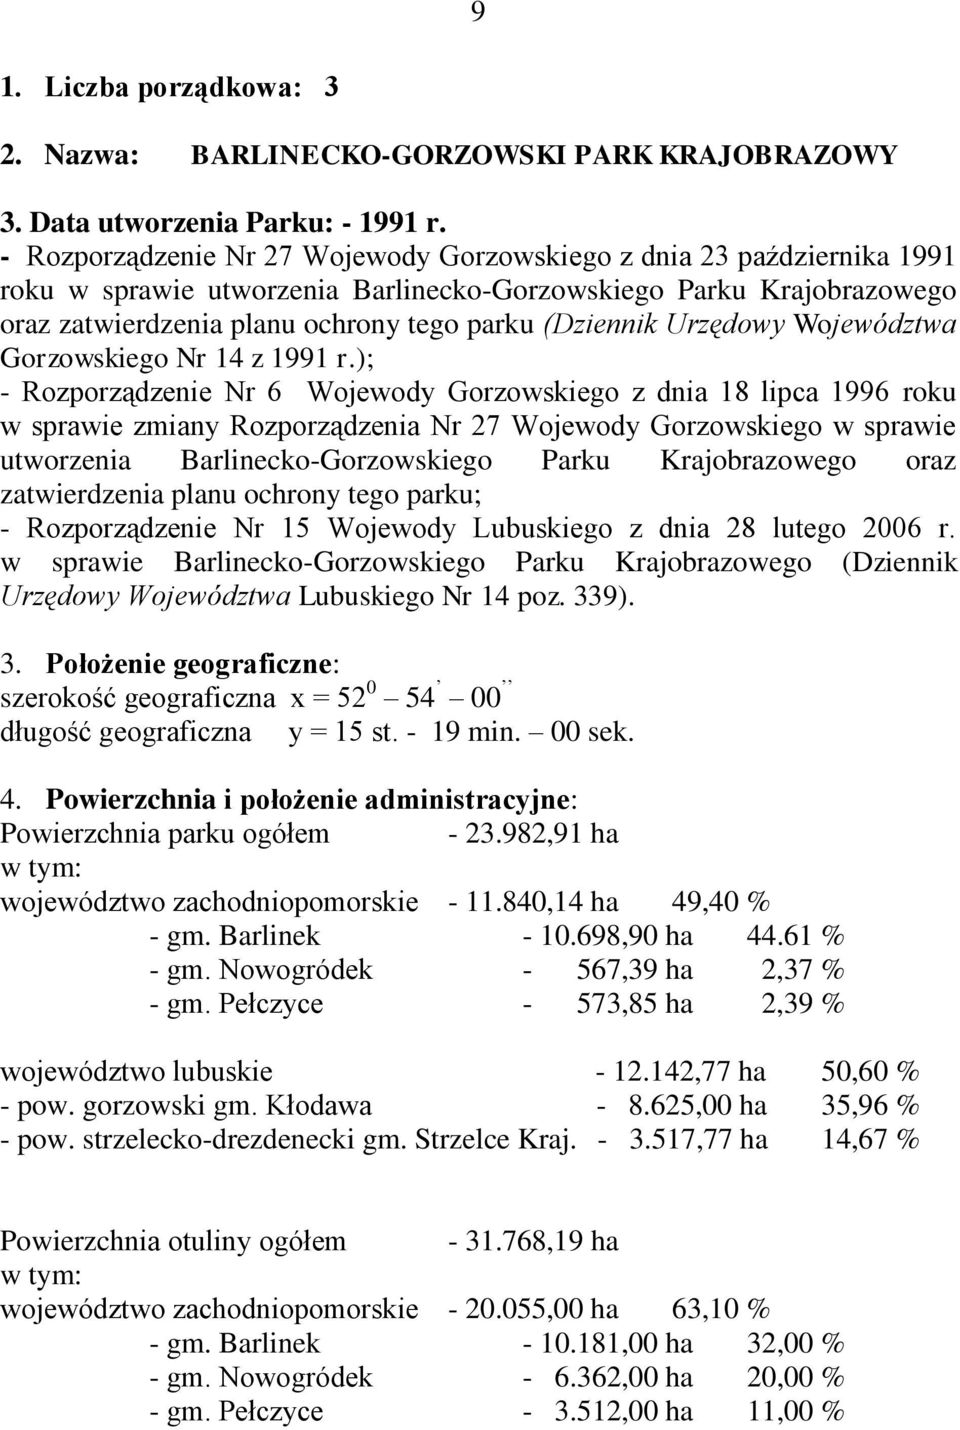 Urzędowy Województwa Gorzowskiego Nr 14 z 1991 r.